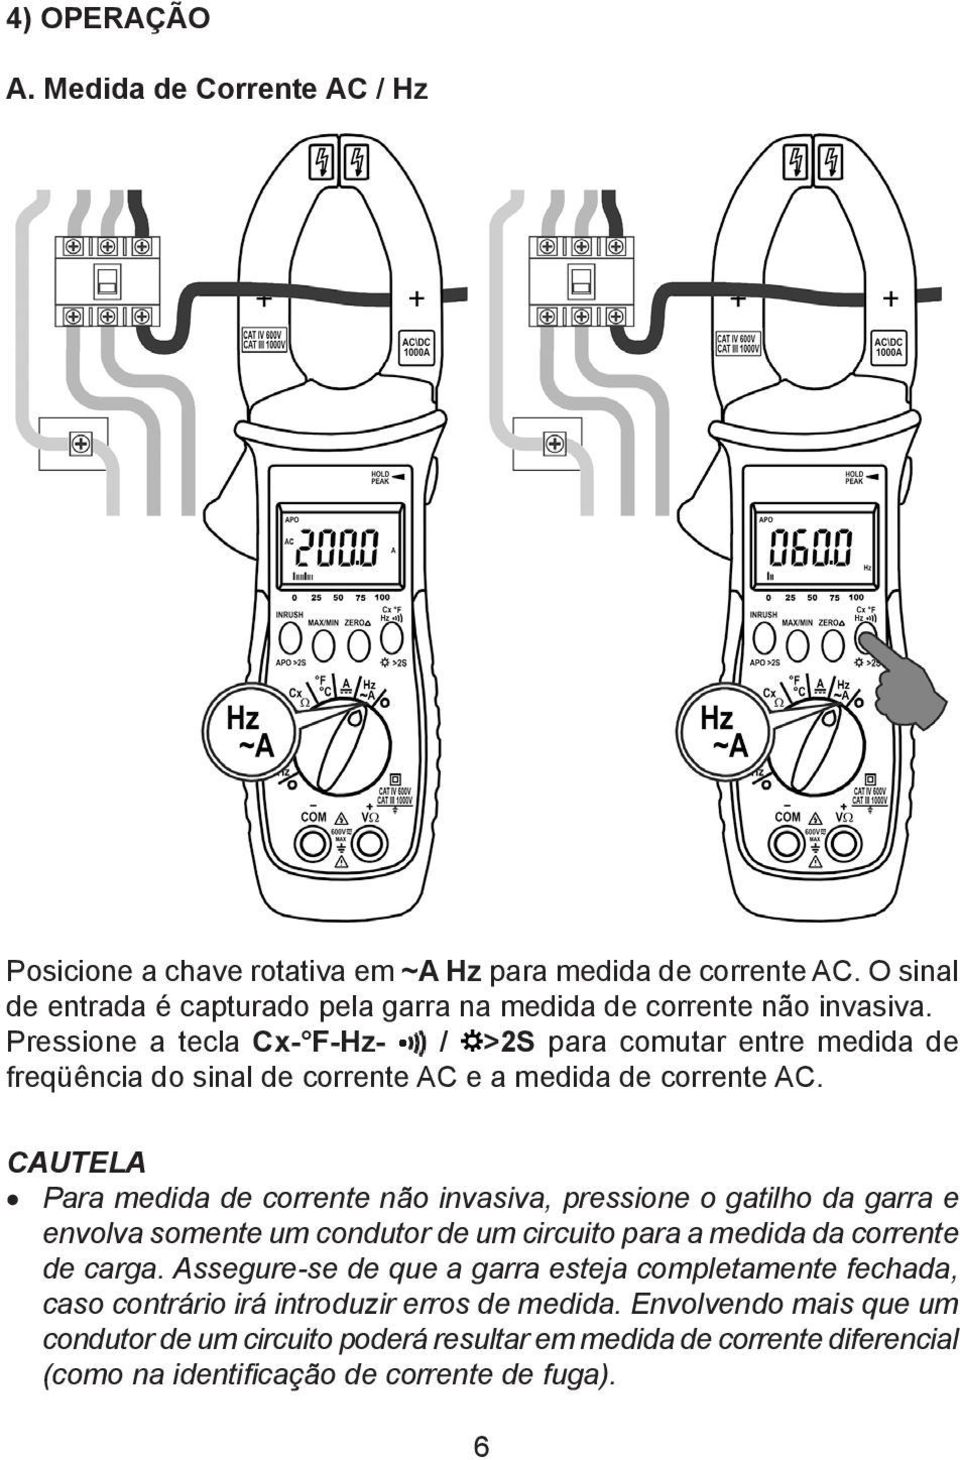 Pressione a tecla Cx- F-Hz- / >2S para comutar entre medida de freqüência do sinal de corrente AC e a medida de corrente AC.